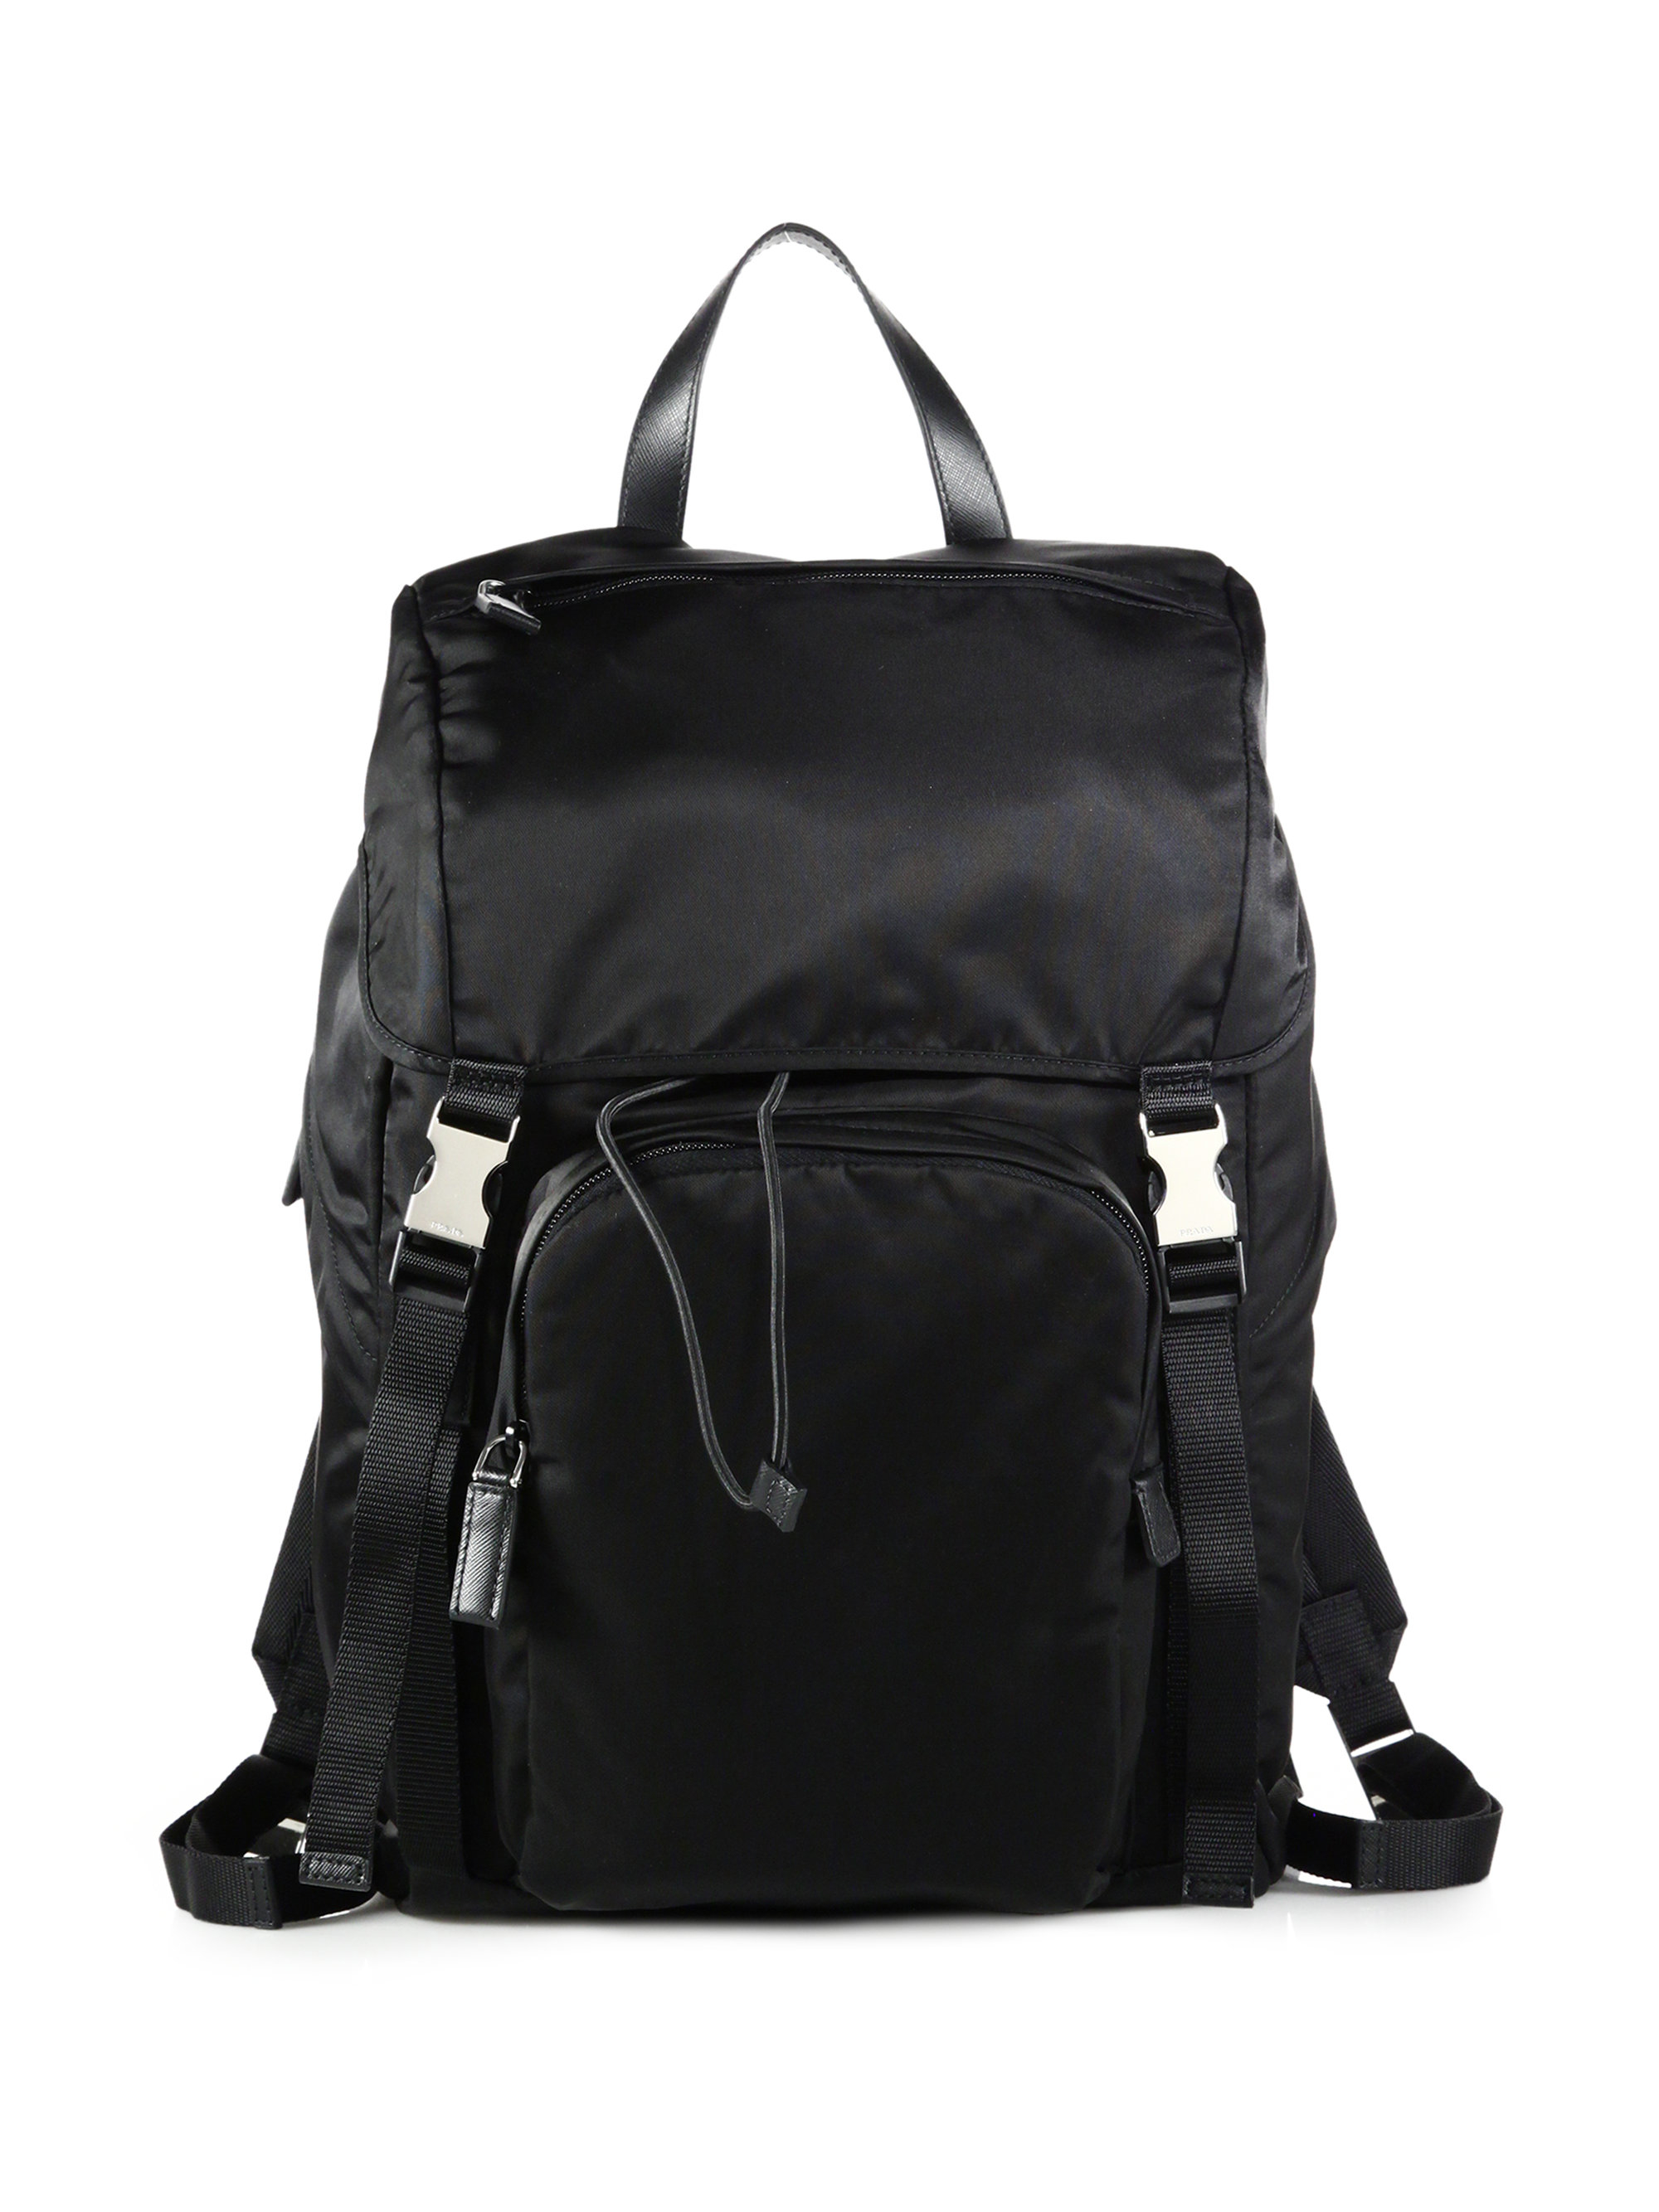 Black Nylon Backpack 87